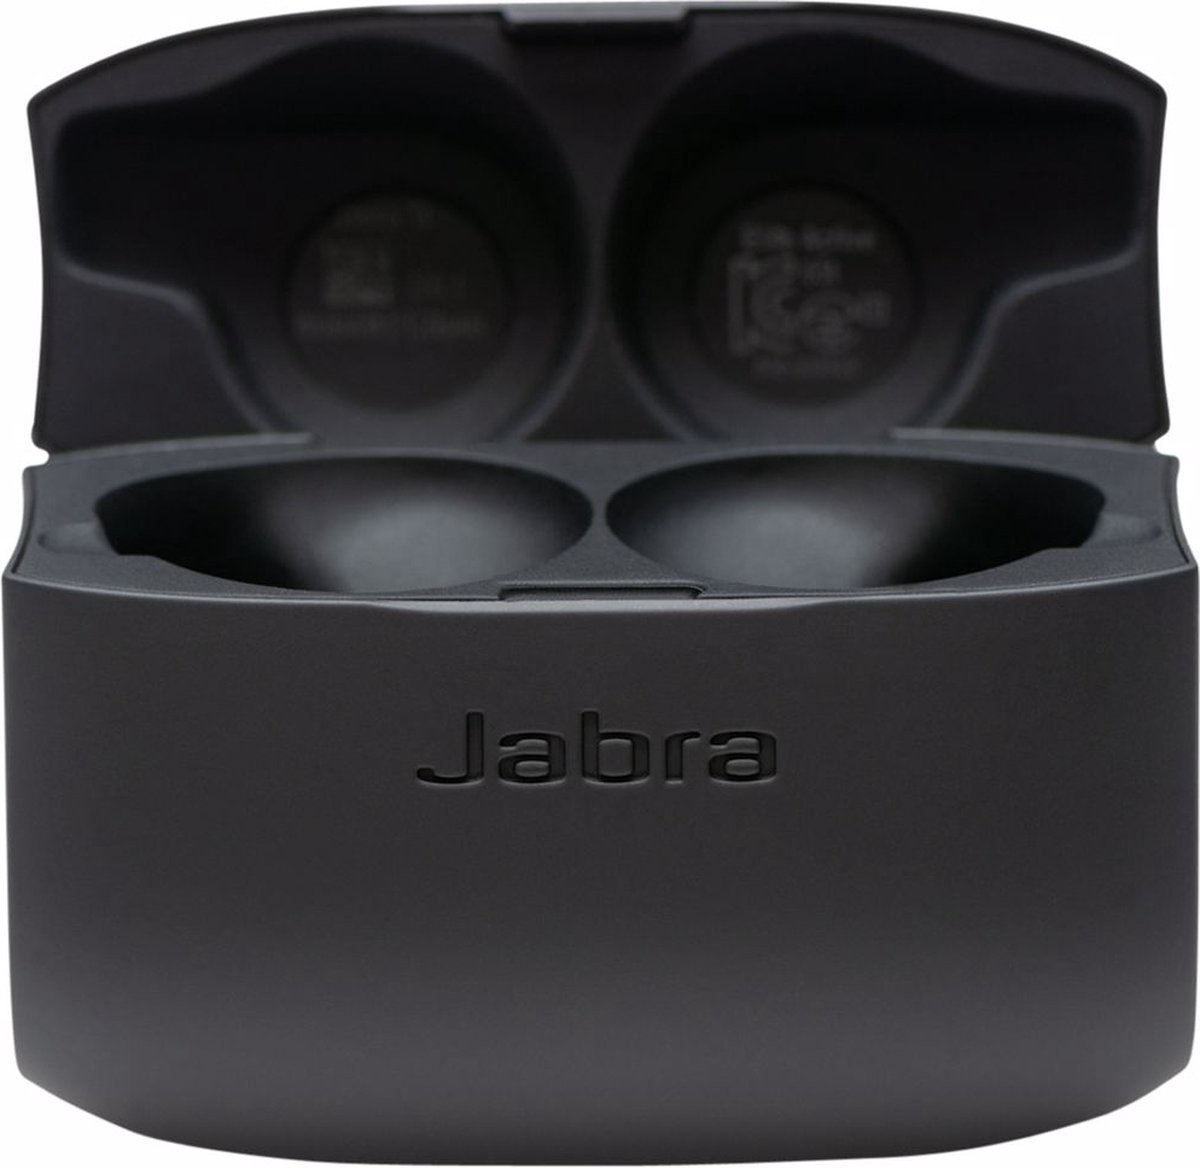 Jabra Elite Active 65t - Volledig draadloze sport oordopjes - Zwart - Jabra